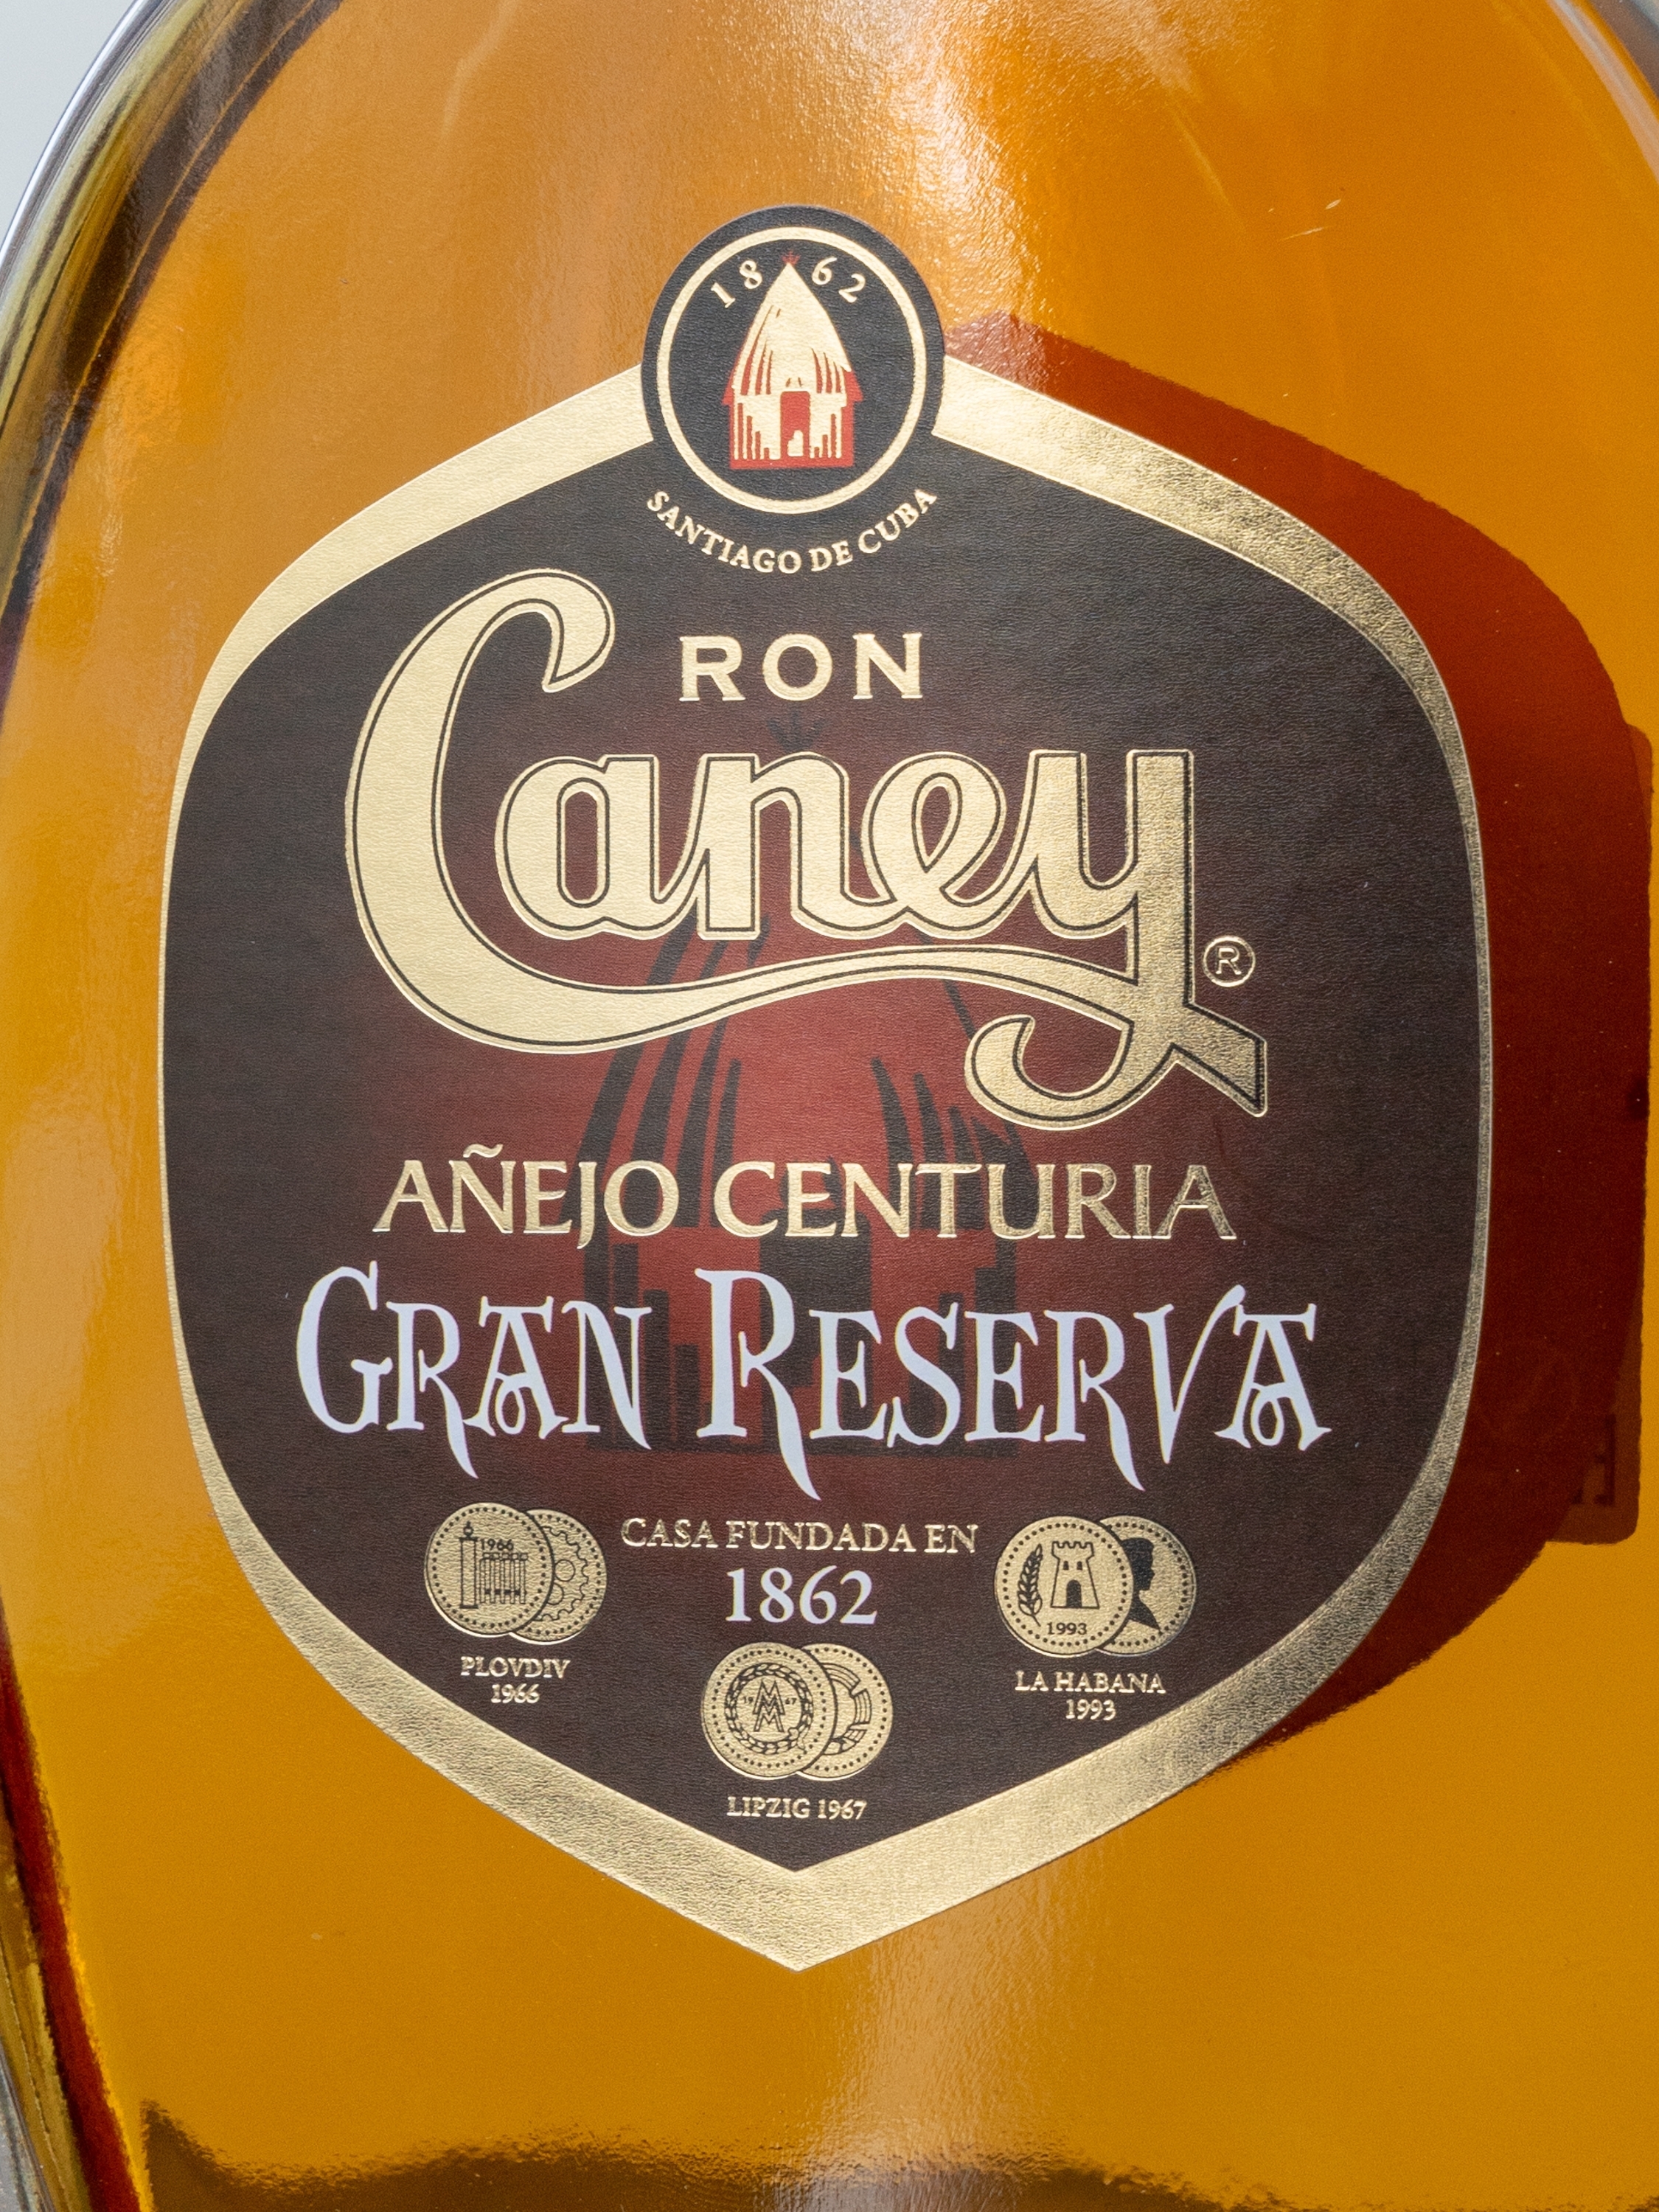 Ром Caney Anejo Centuria Gran Reserva / Каней Аньехо Сентурия Гран Ресерва 10 лет